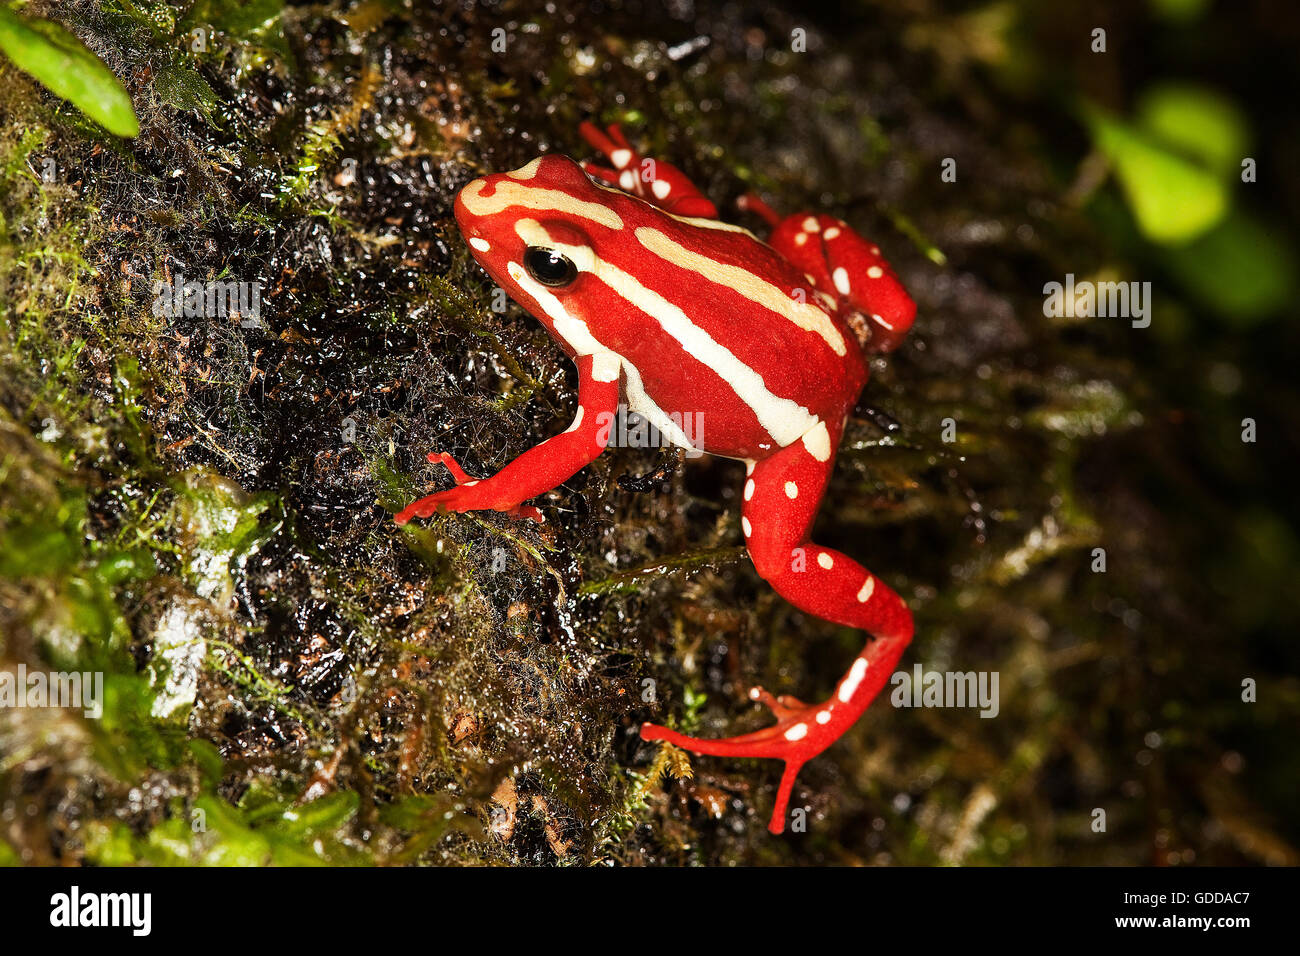 Phantasmal Poison rana Epipedobates tricolor, Adulto, ranas venenosas de América del Sur Foto de stock